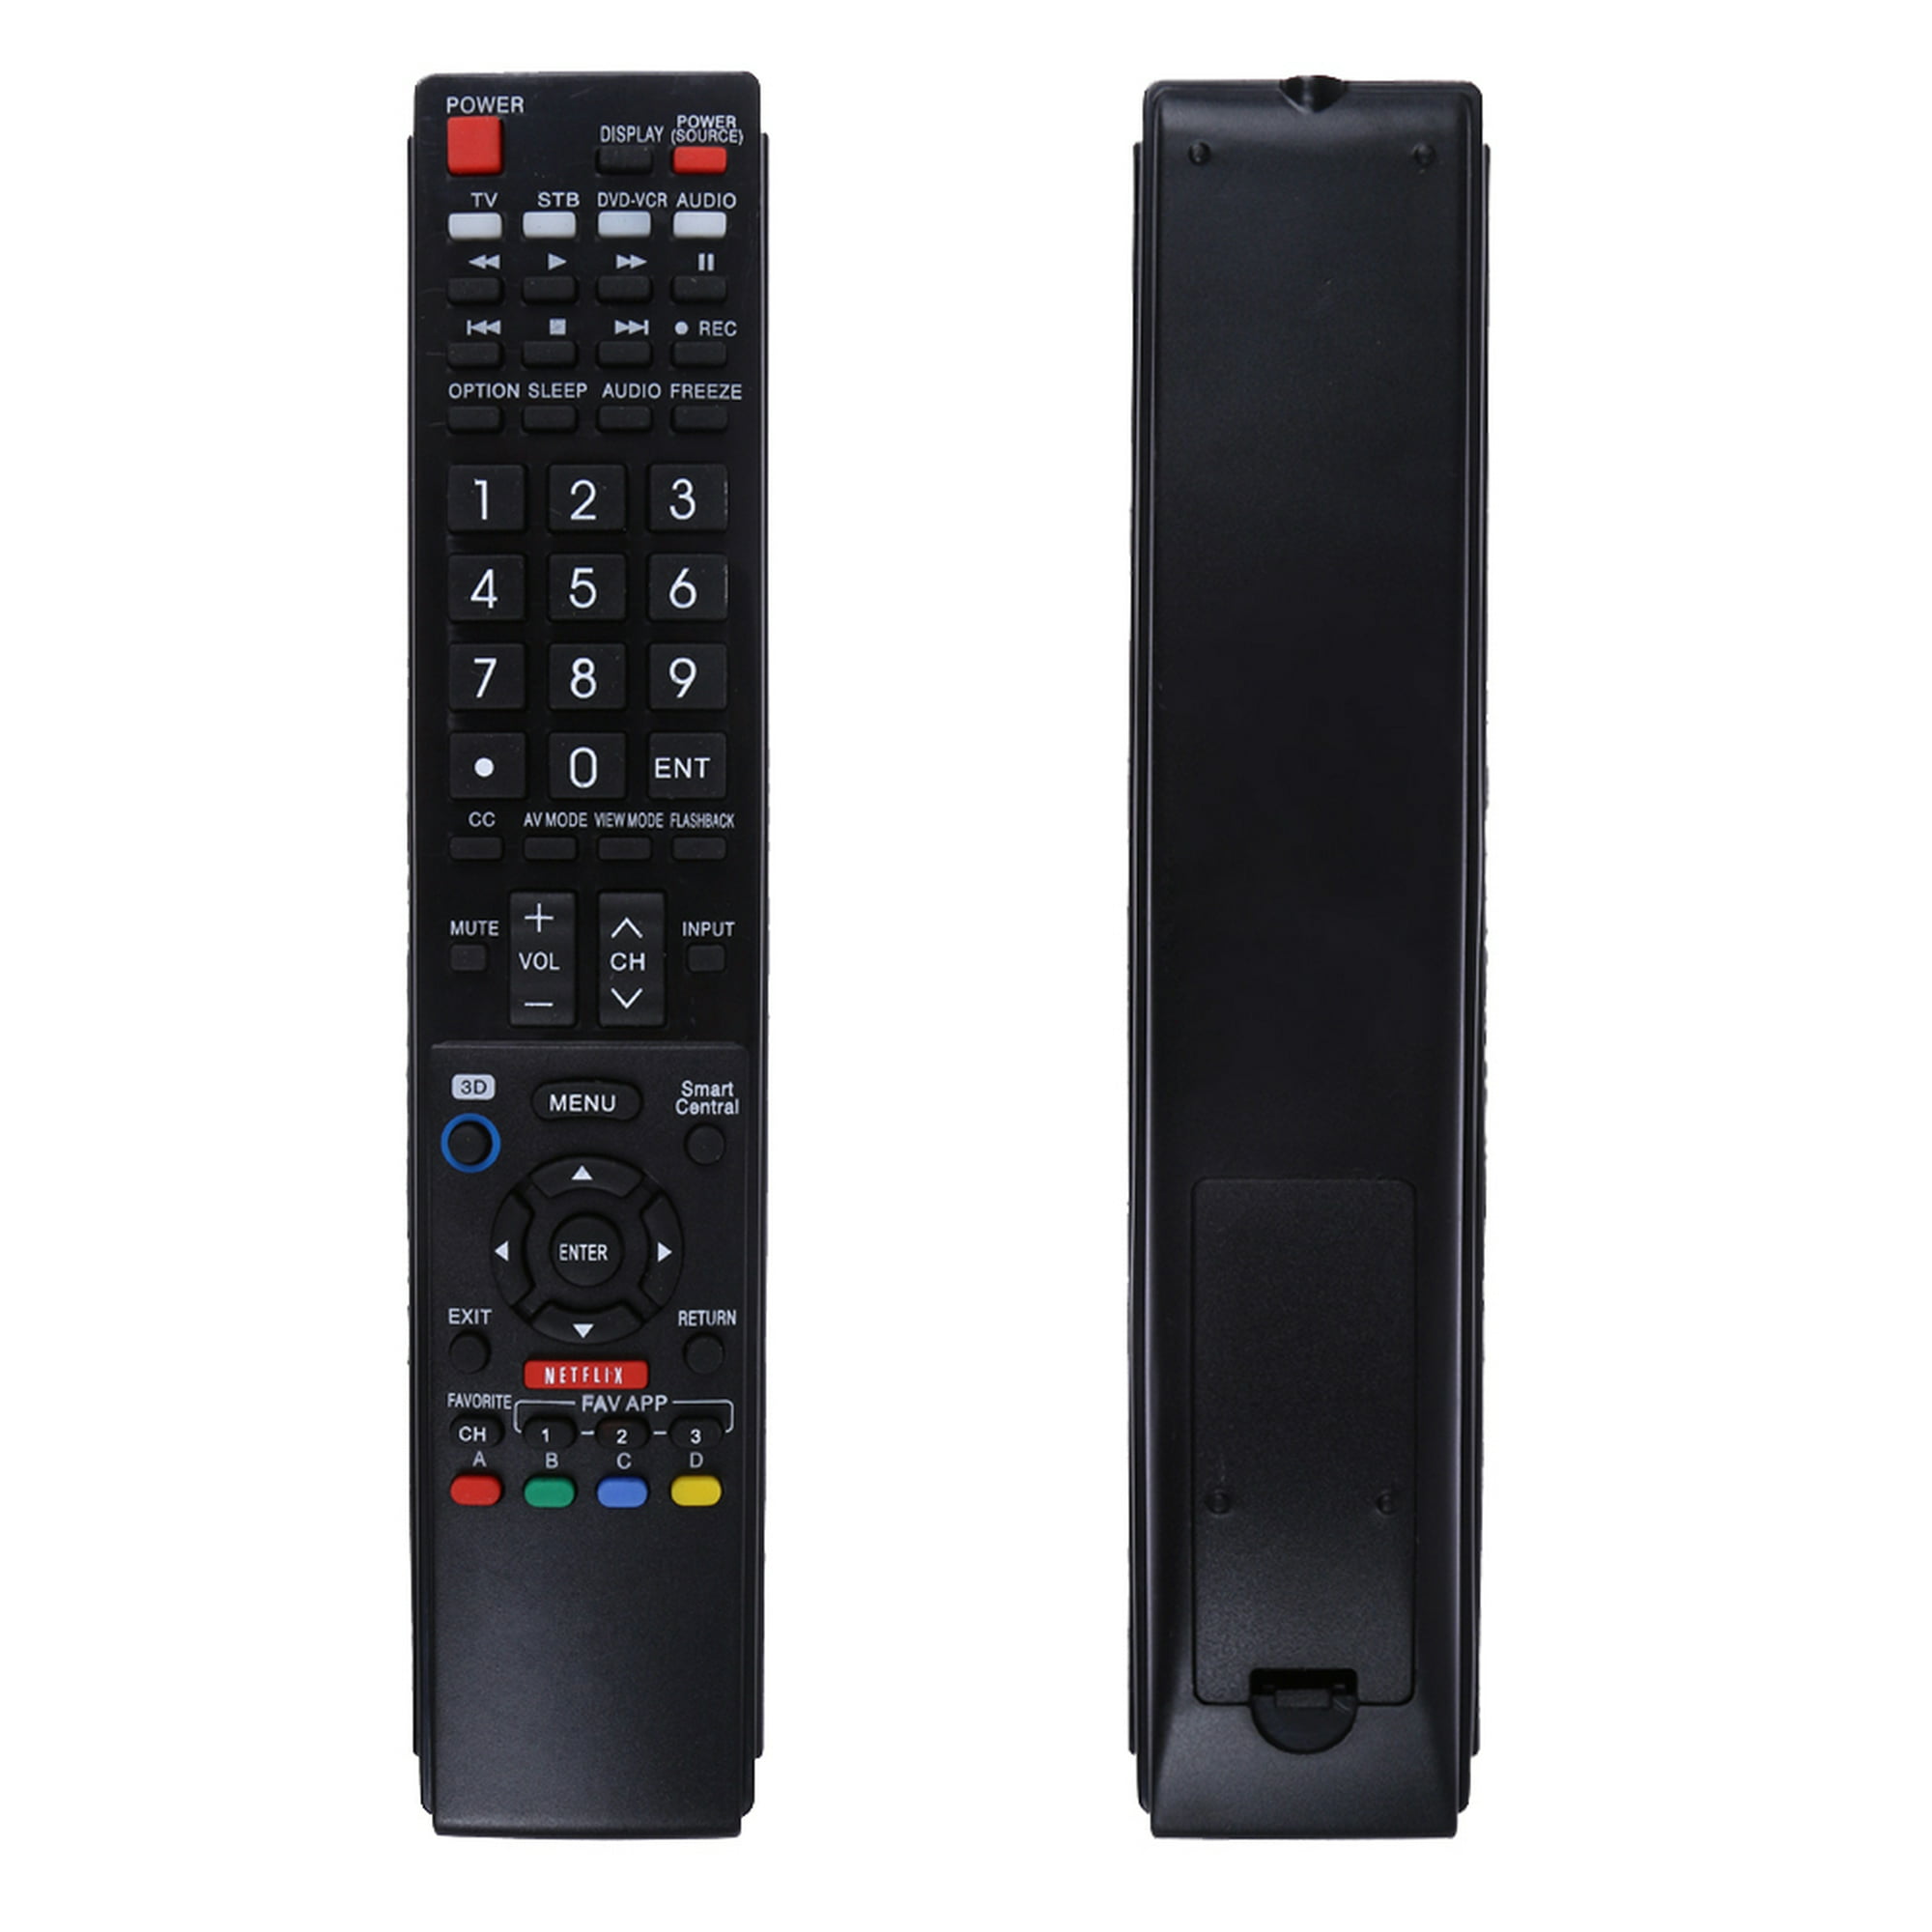 Nuevo reemplazo Sharp AQUOS mando a distancia GB118WJSA apto para Sharp  AQUOS TV GB004WJSA GB005WJSA GA890WJSA GB105WJSA GA935WJSA GA935WJSAE